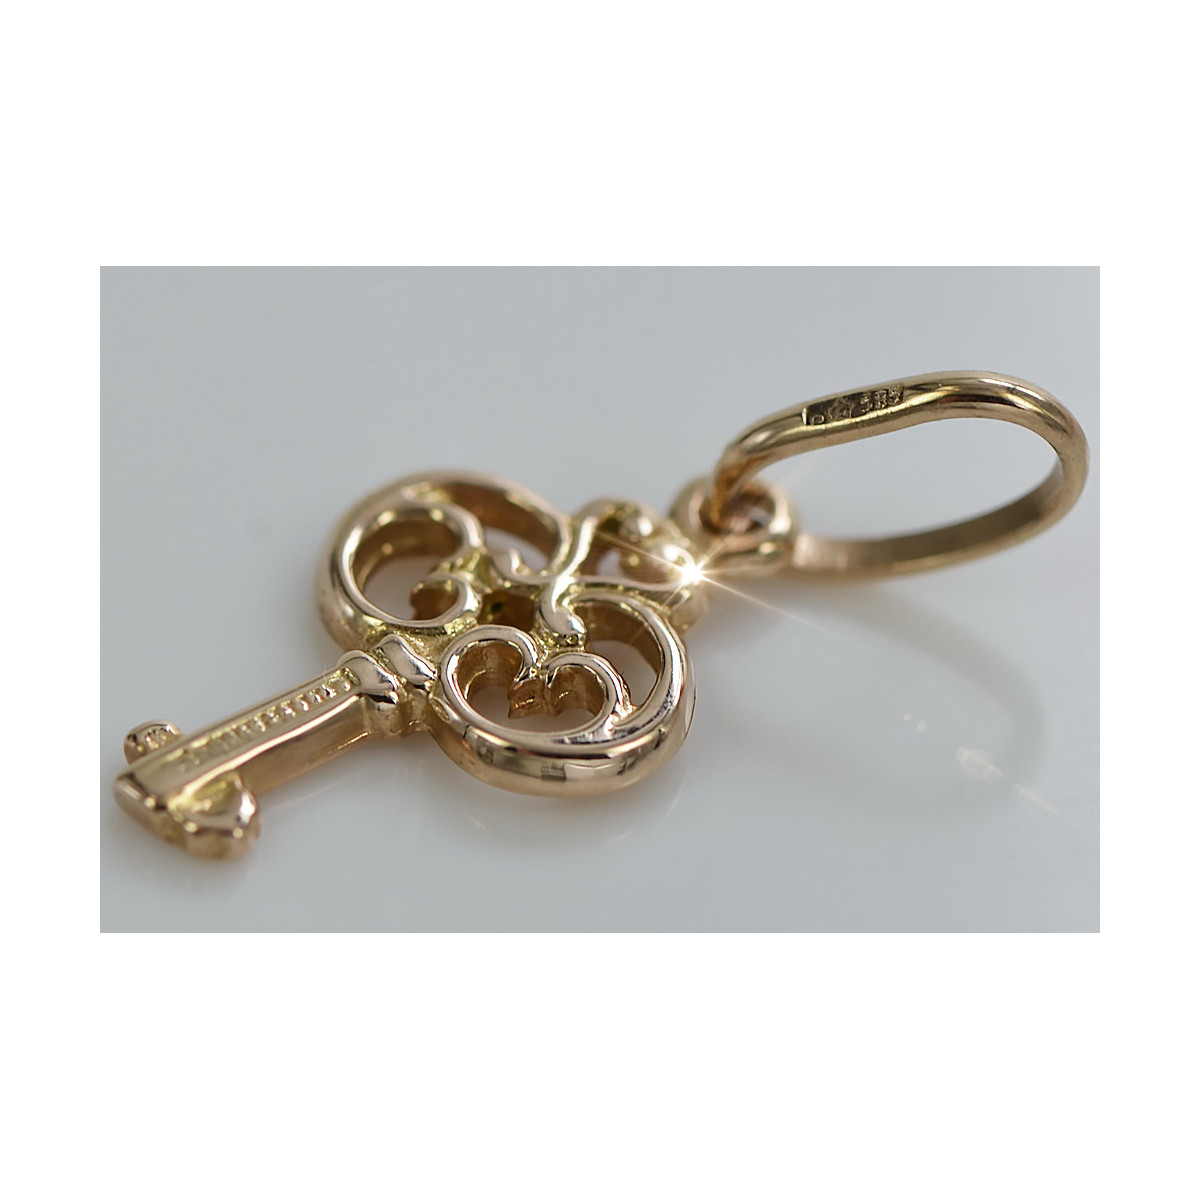 "No Stones Original Vintage 14K Rose Gold Key Pendant"  vpn019 vpn019